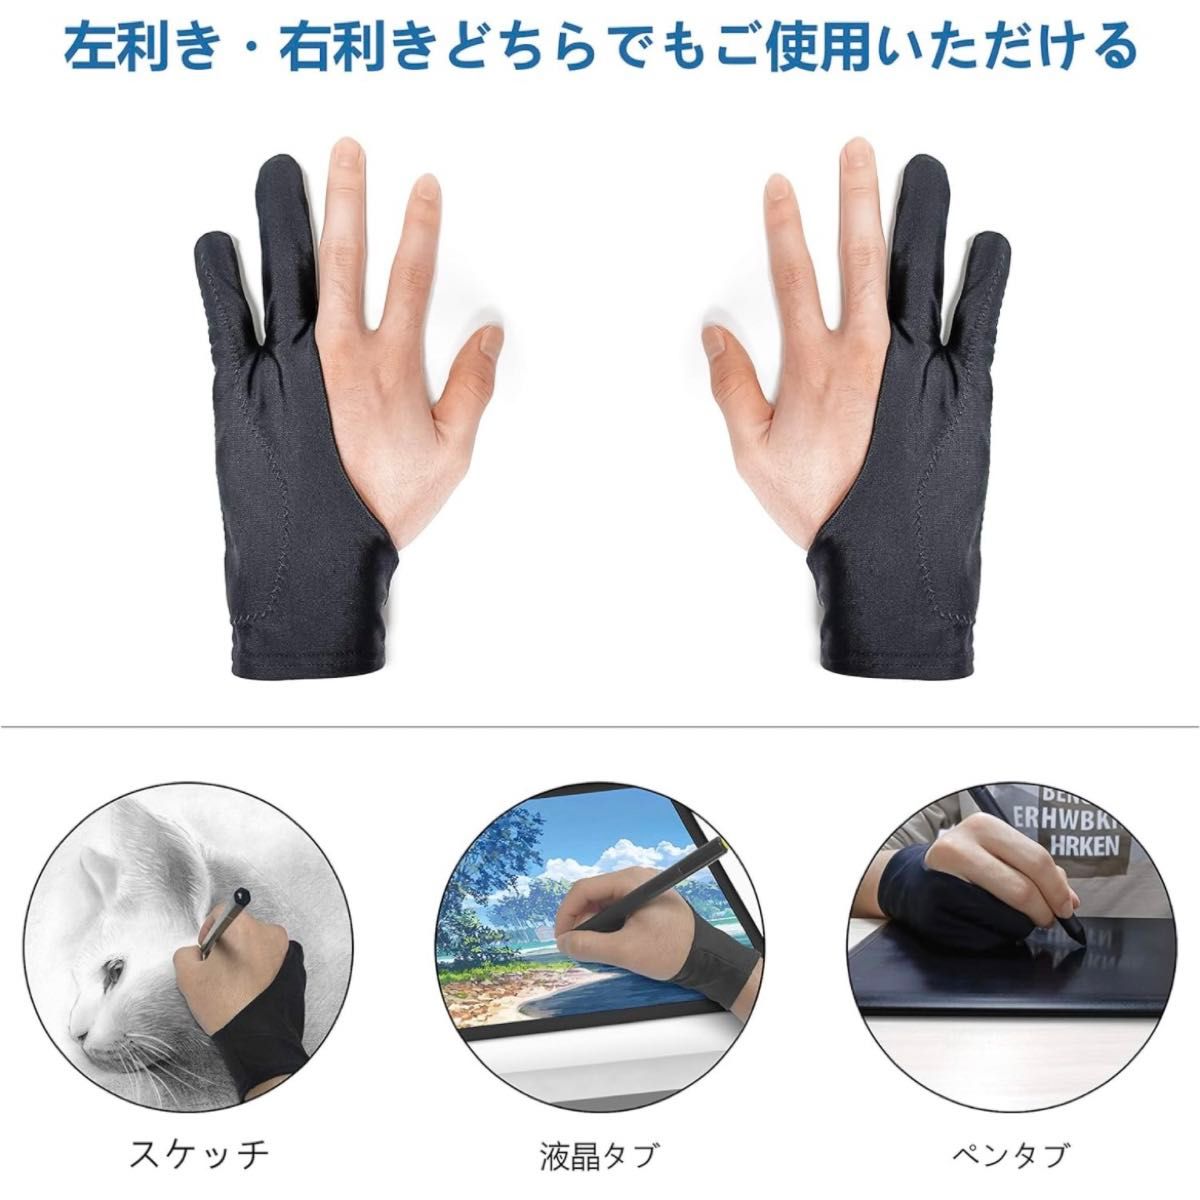 二本指グローブ 2枚入 絵描き 手袋 誤動作防止グローブ 通気性 液タブ ペンタブレット用 ペンタブ 手袋 男女兼用